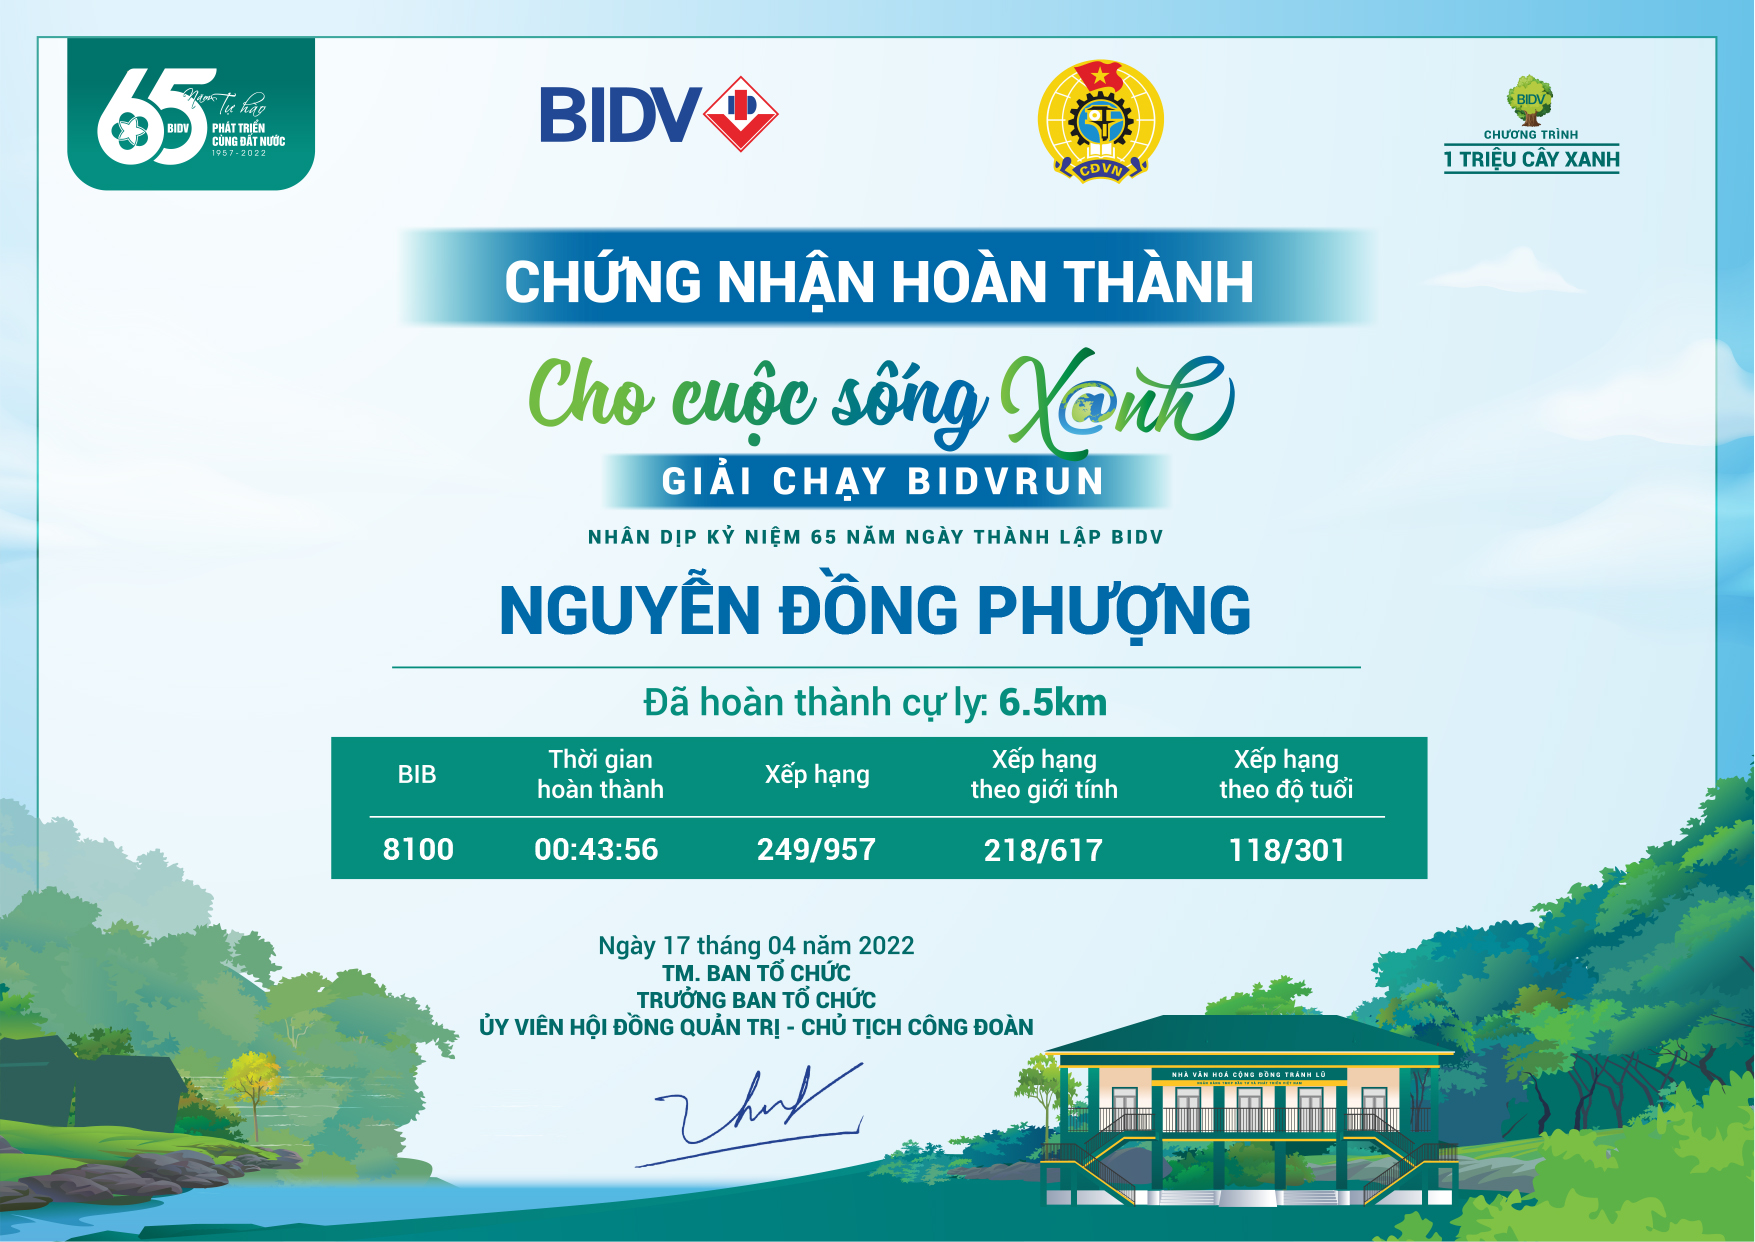 8100 - Nguyễn Đồng Phượng